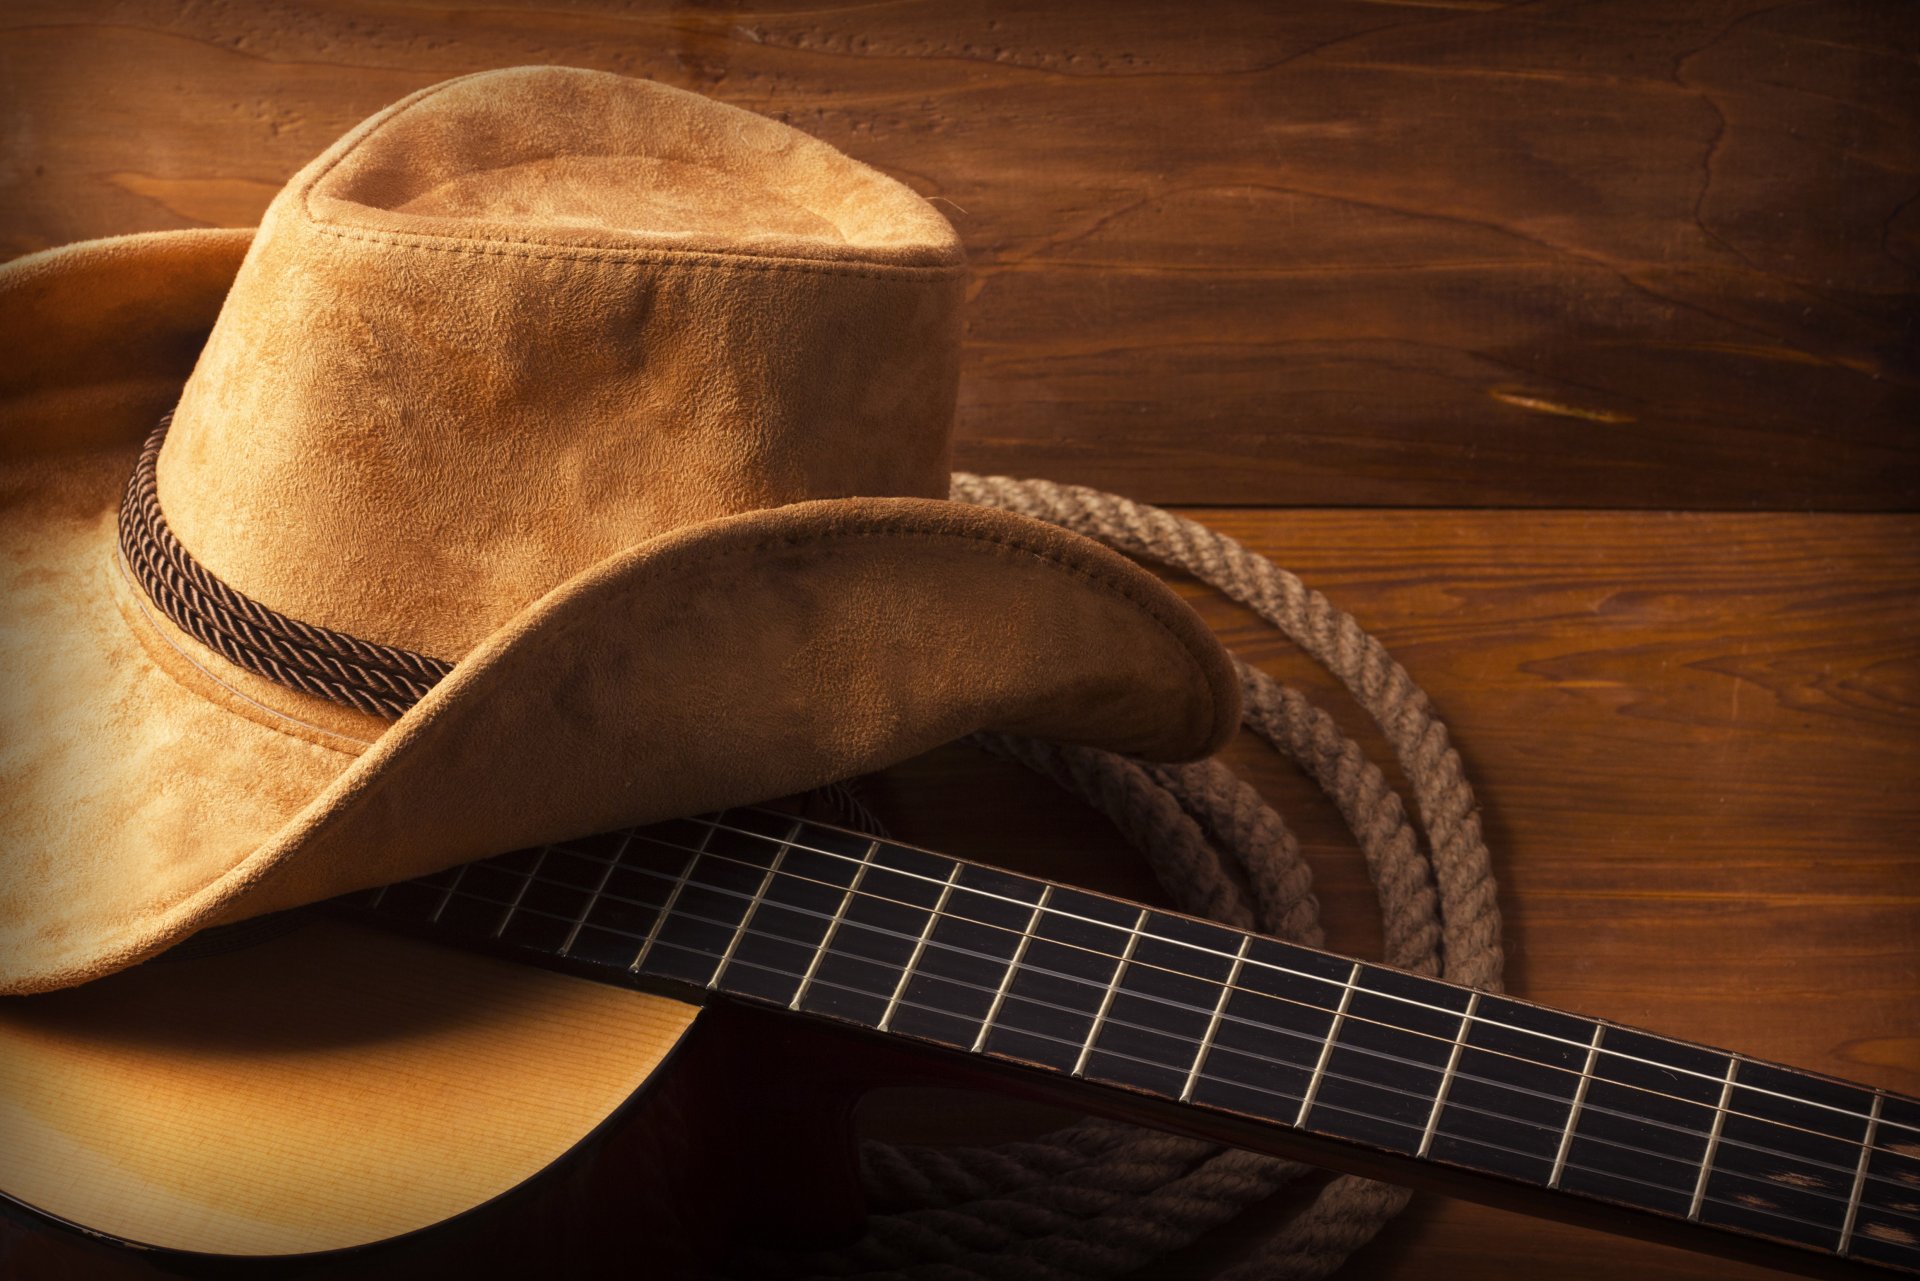 sombrero de papel tapiz,guitarra,guitarra acustica,sombrero de vaquero,instrumentos de cuerda pulsada,sombrero